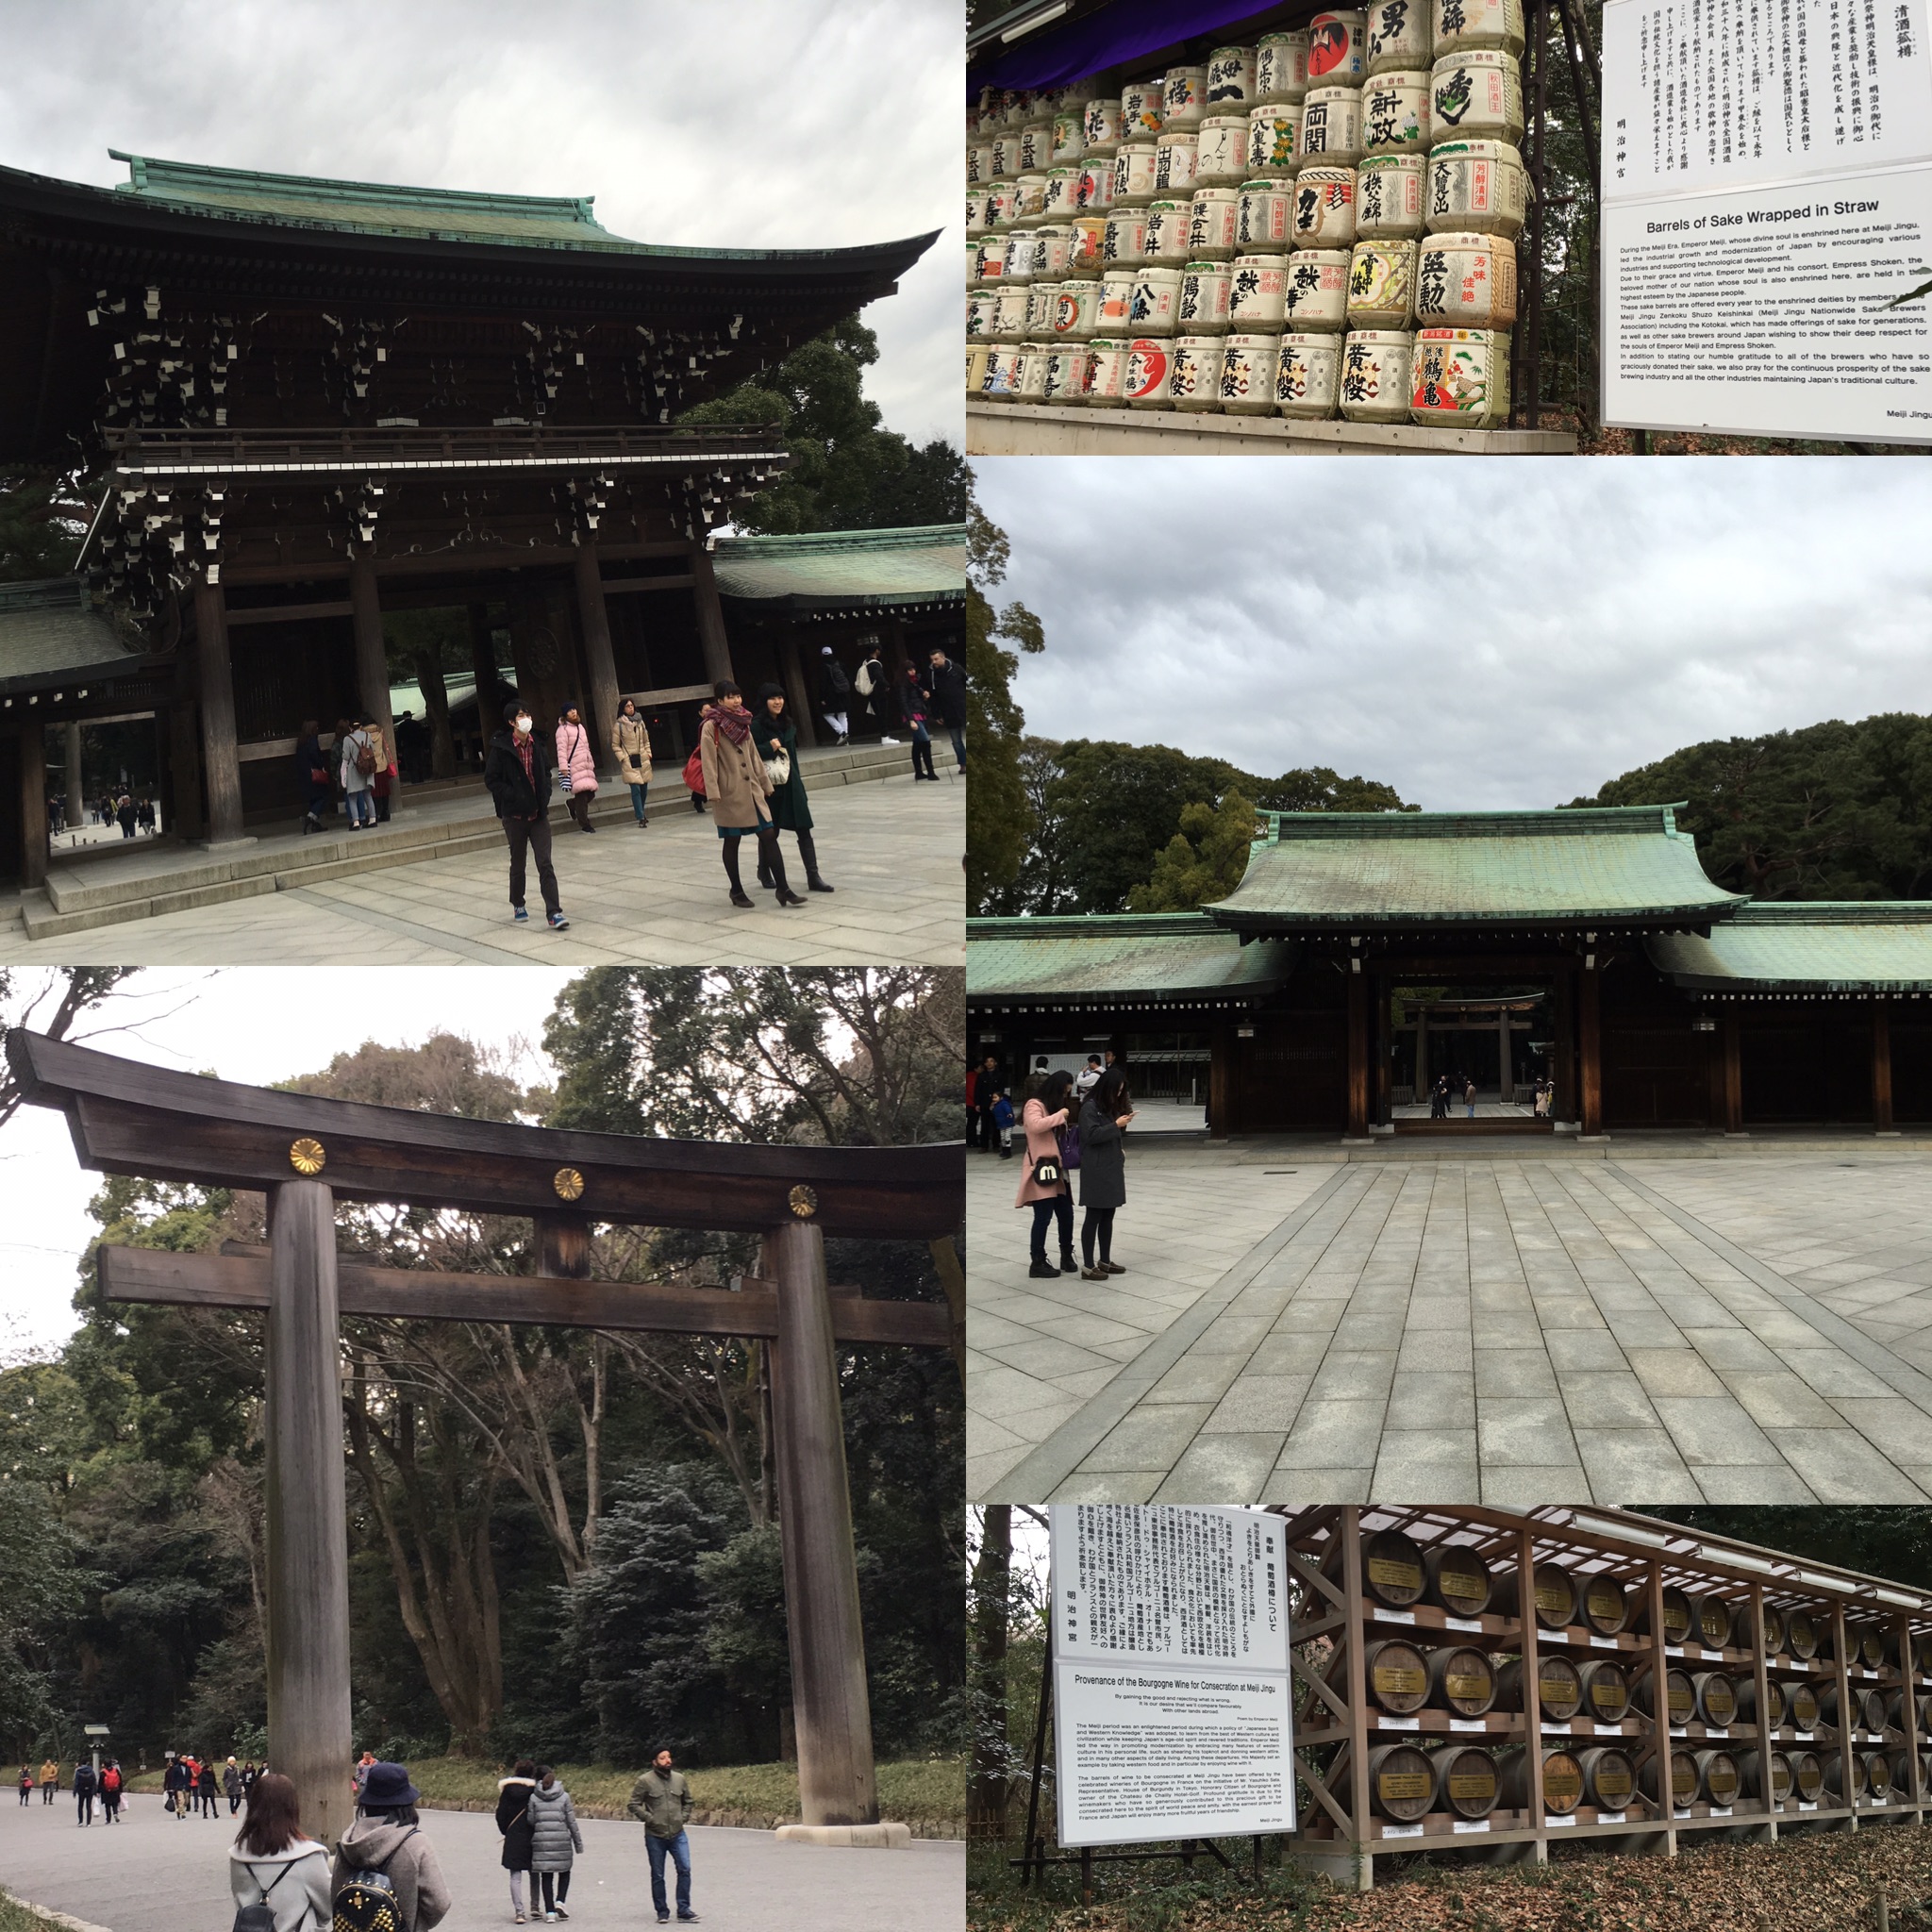 The scenery at the Meiji Jingu Shrine.